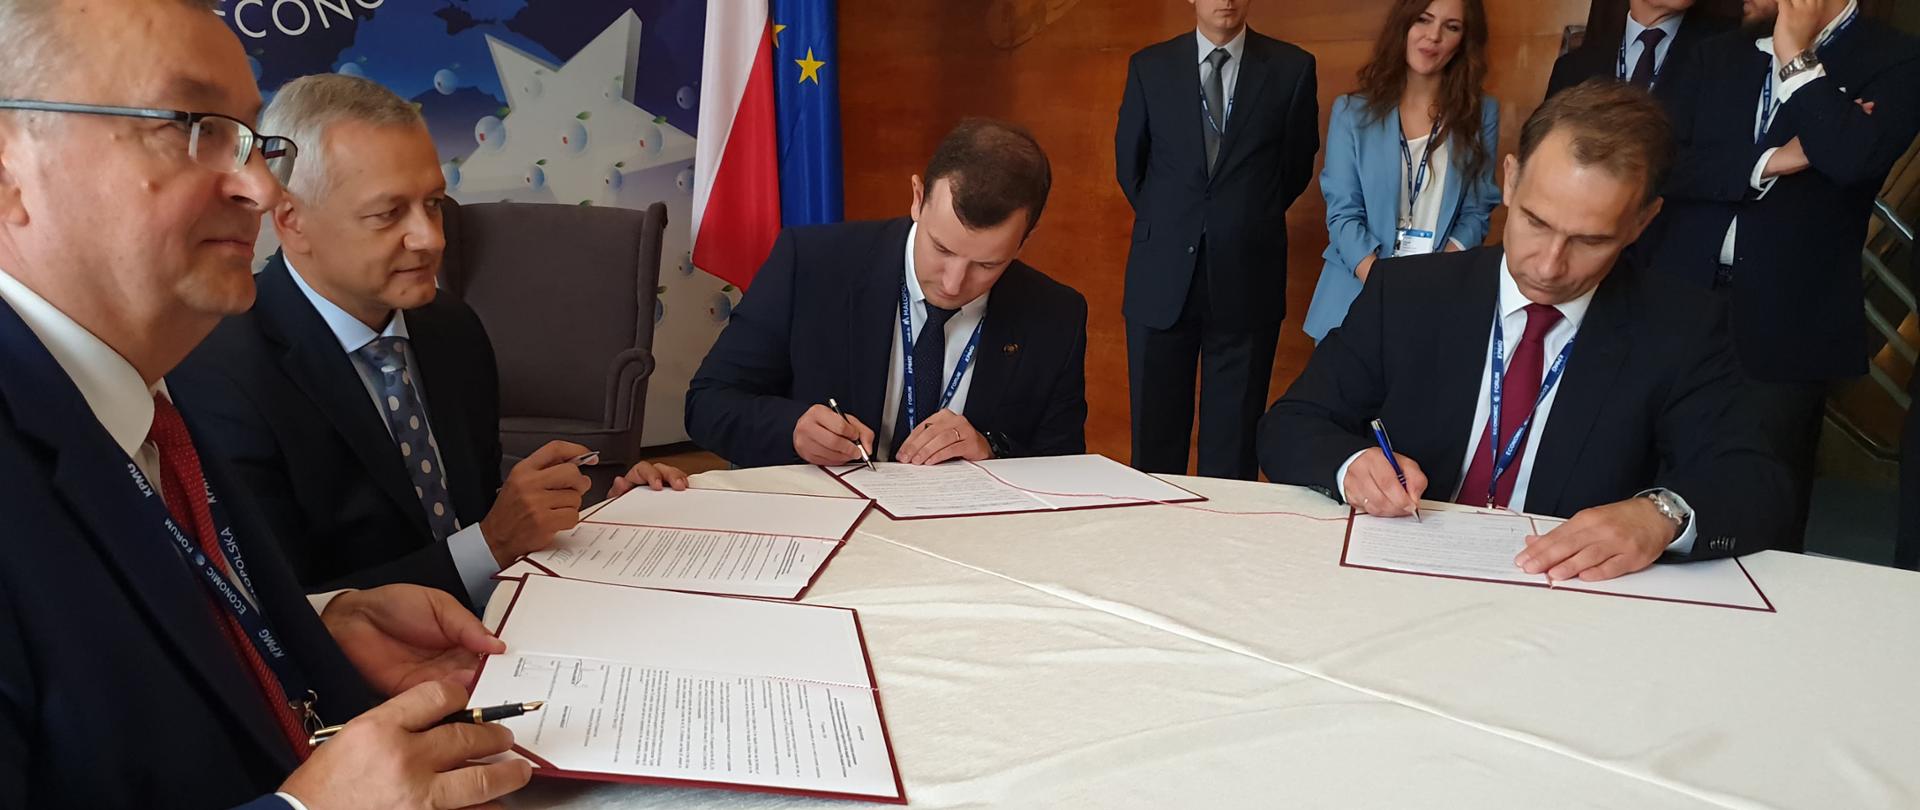 Ministrowie Marek Zagórski i Andrzej Adamczyk podpisują dokumenty siedząc przy stole.